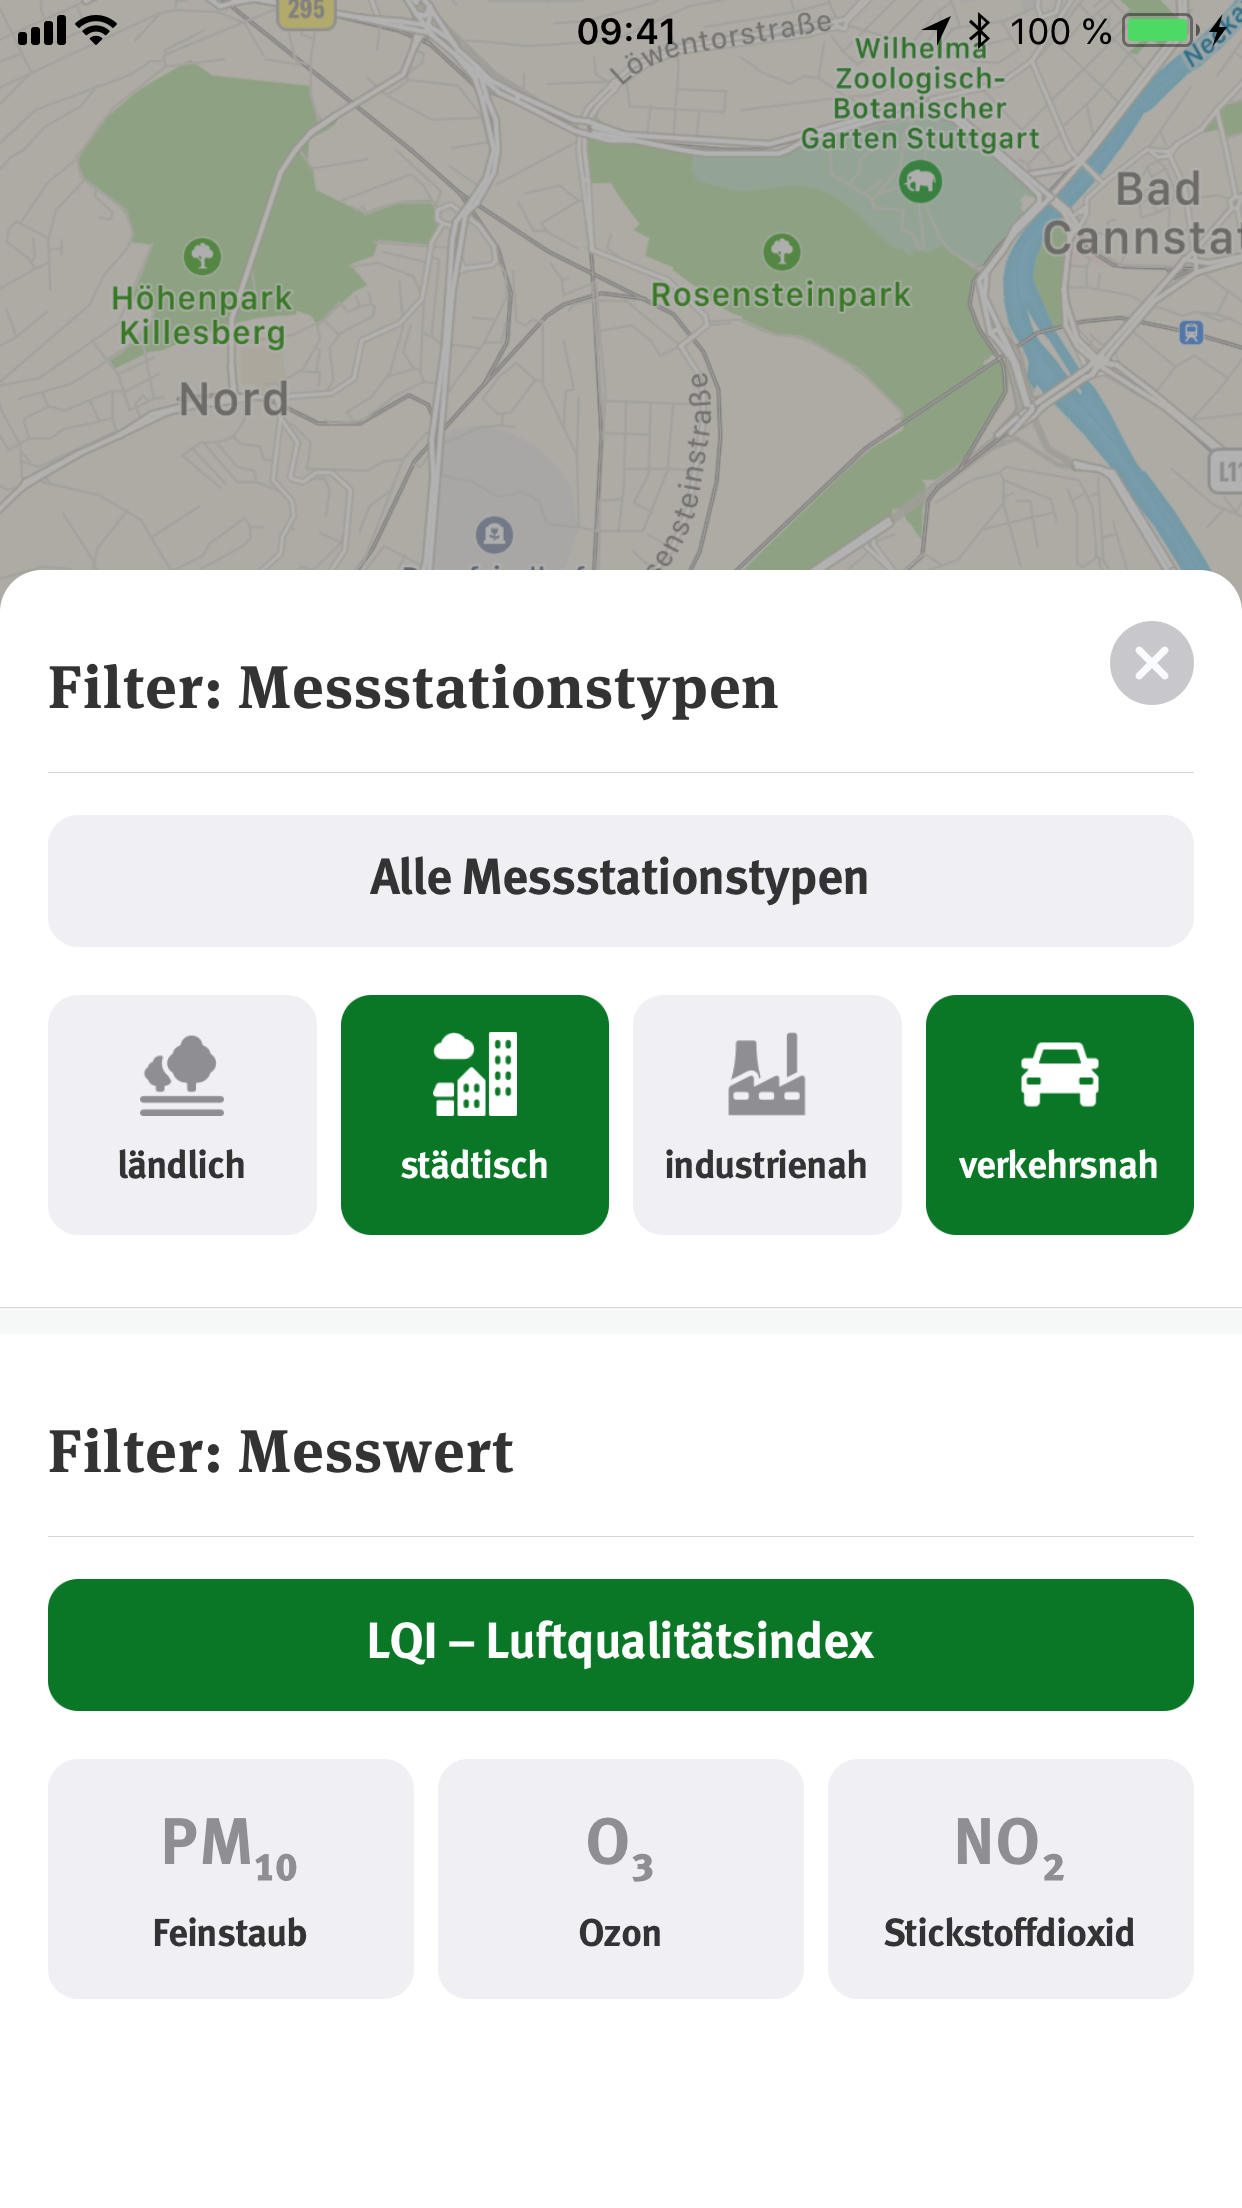 UBA Luftqualität App – Karteneinstellungen